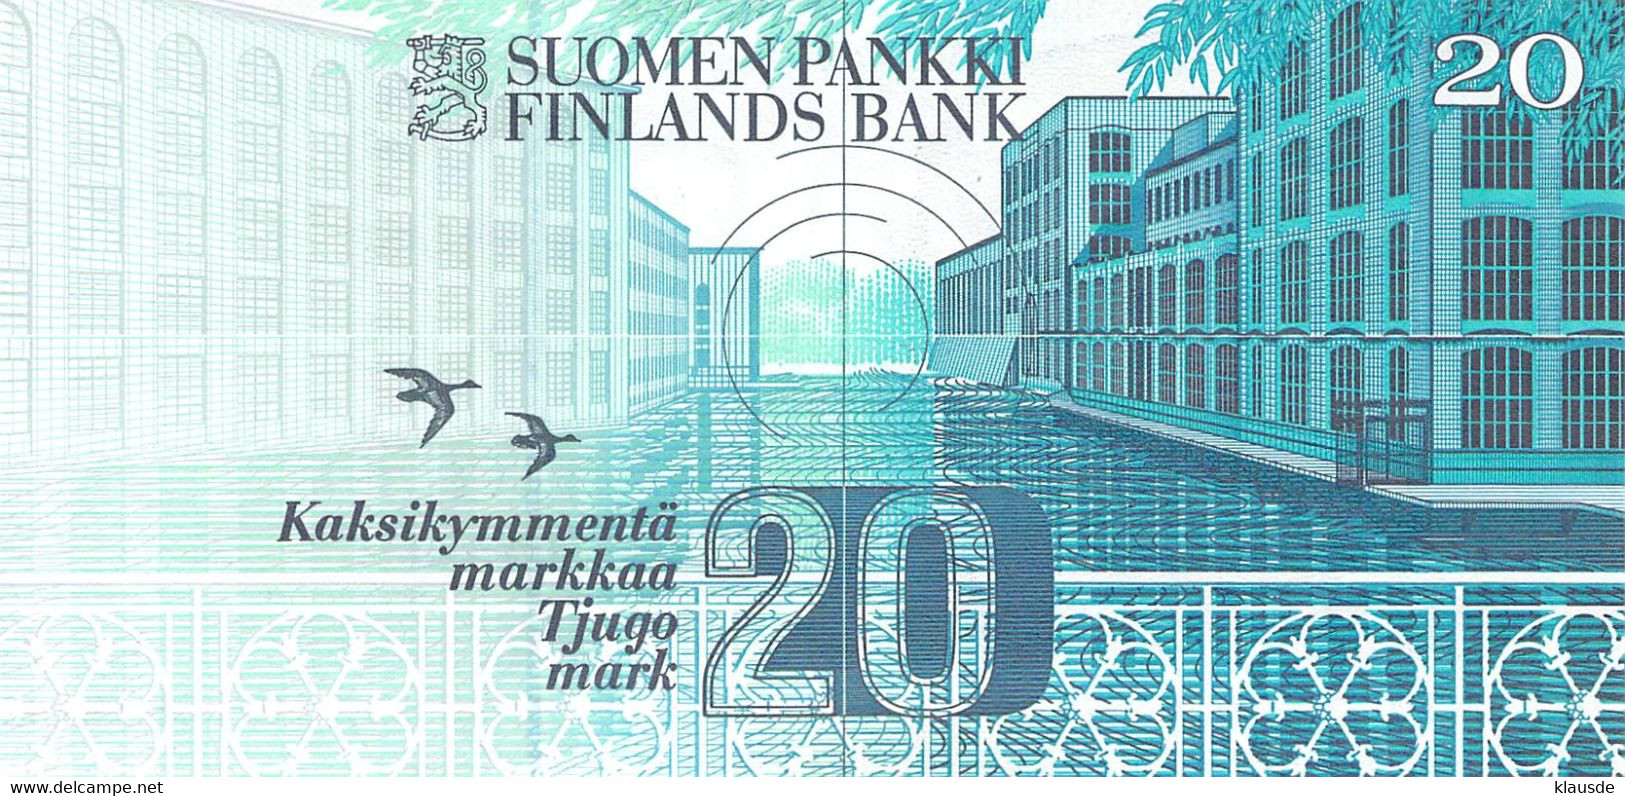 Finnland 20 Markkaa 1993/97  UNC - Finland